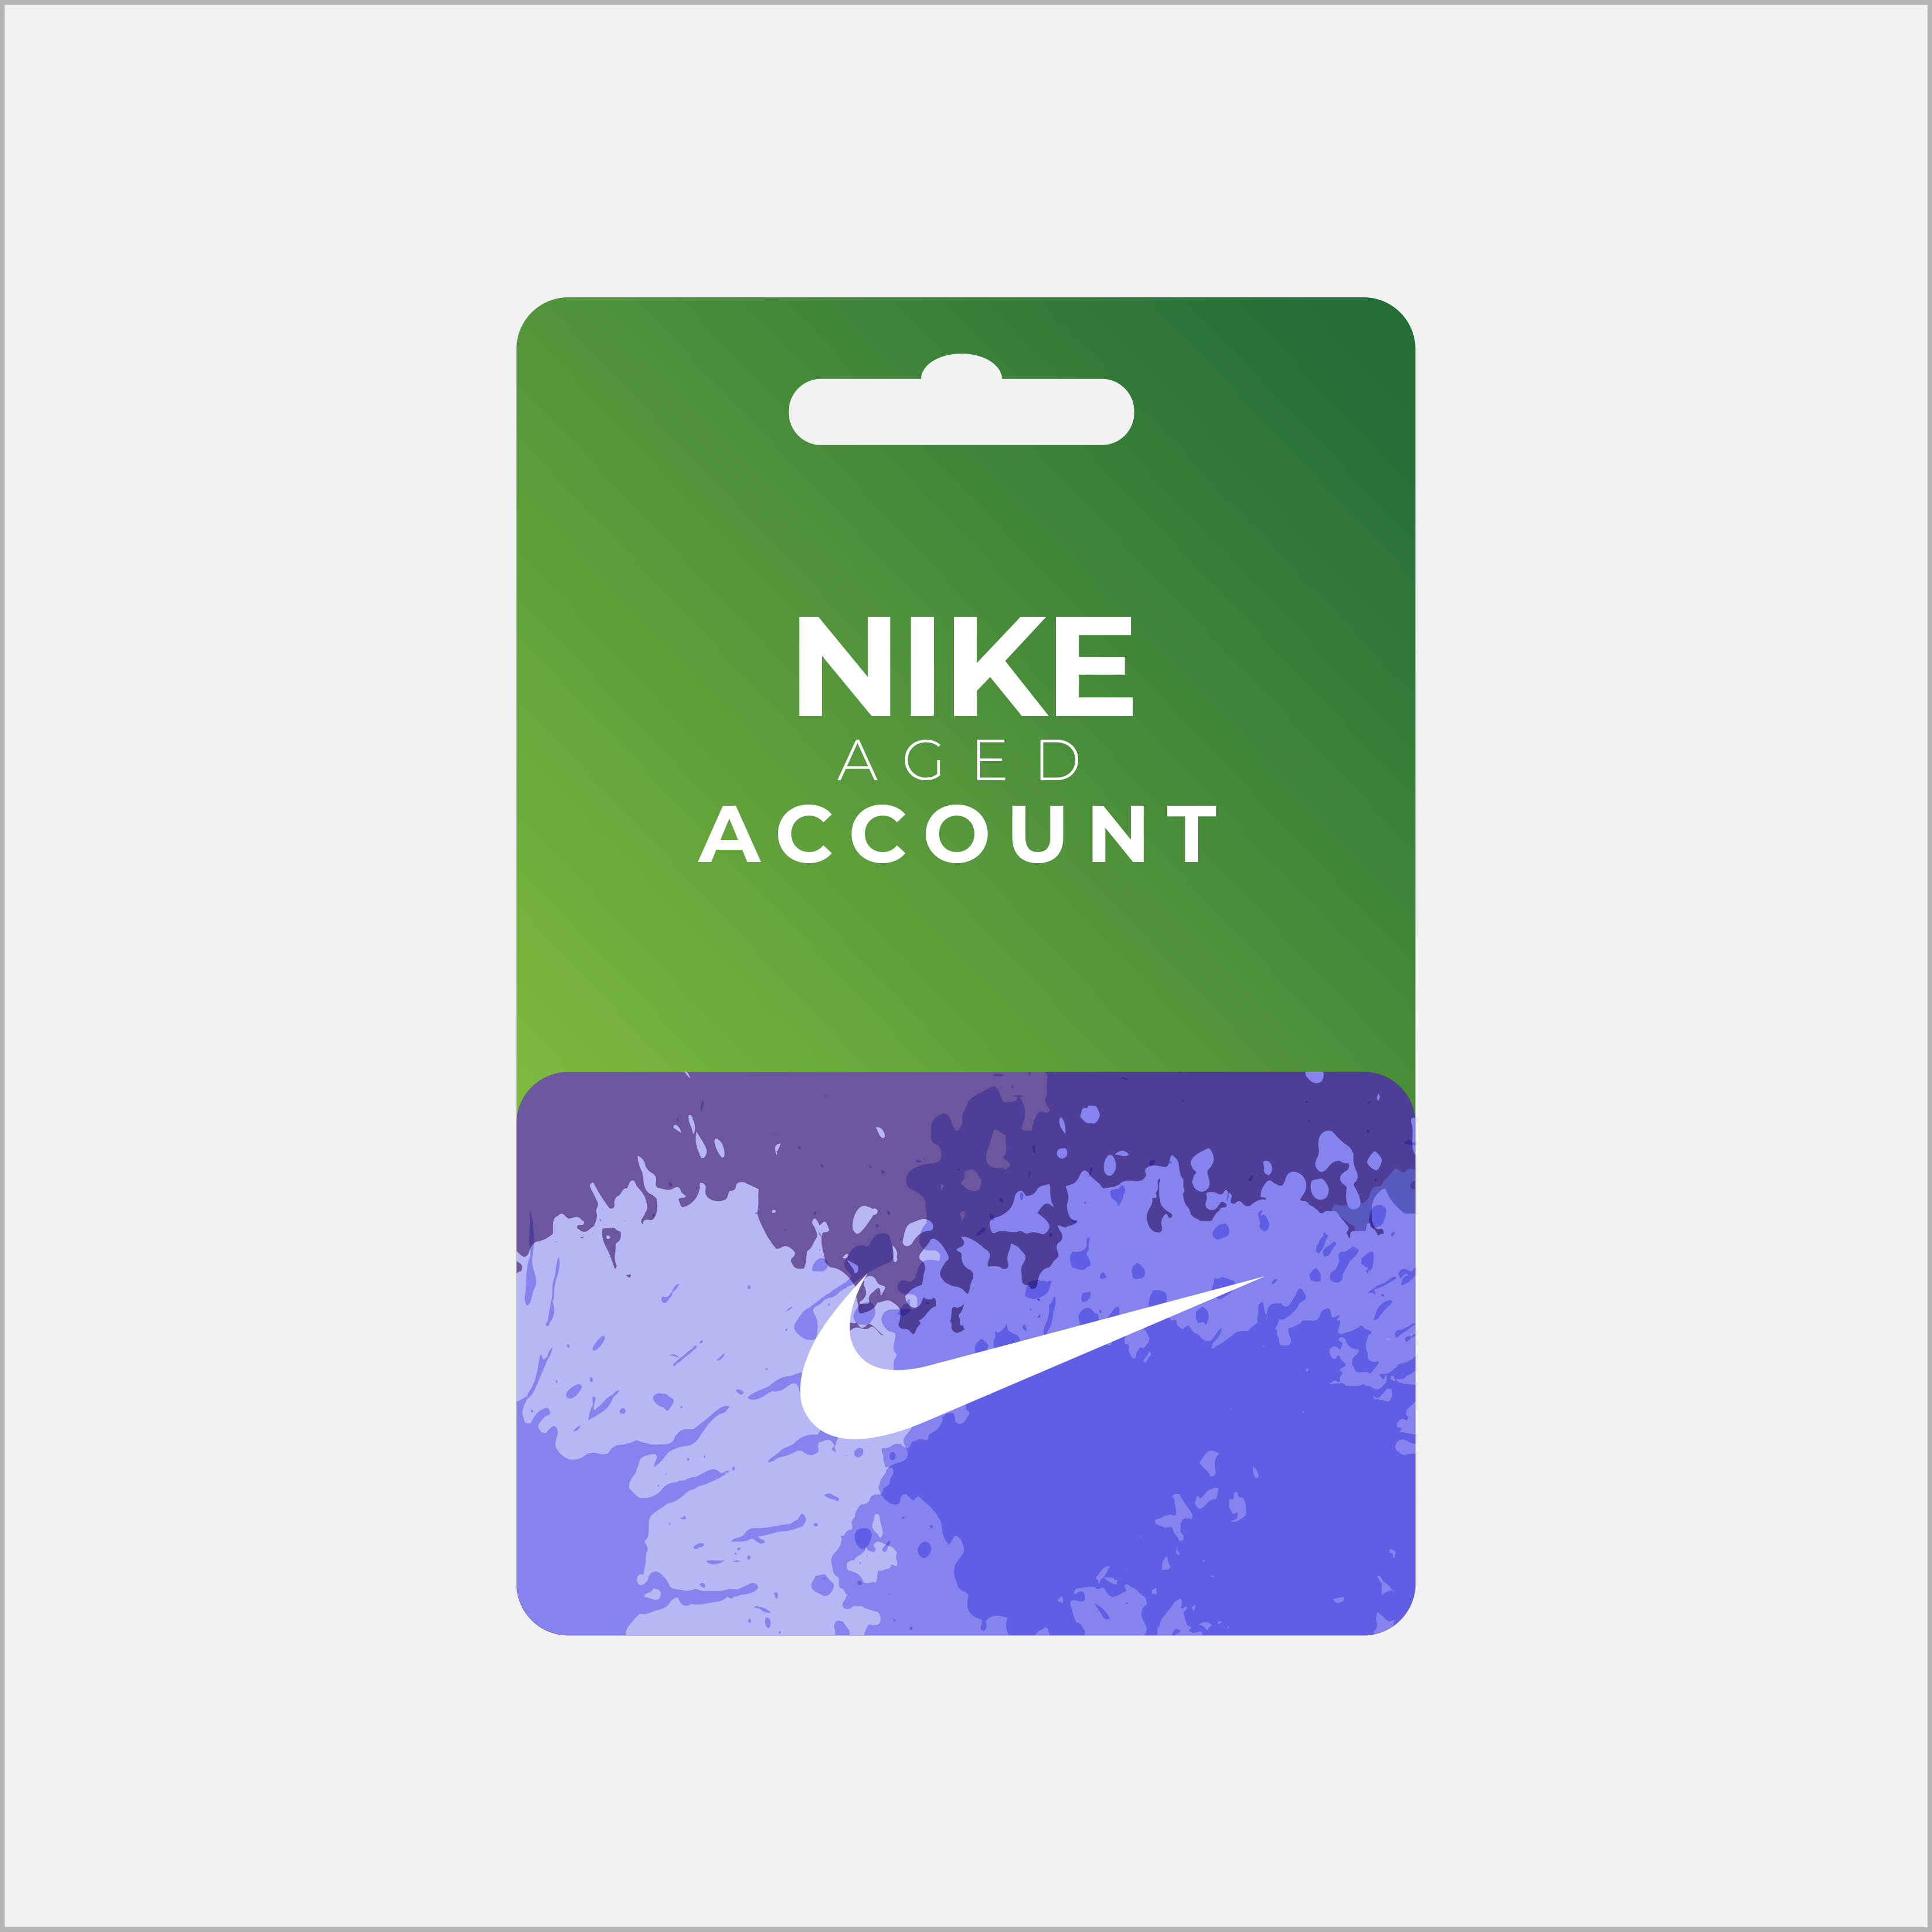 por ciento Escalofriante ensayo Aged Nike Account | Nike Discount Codes